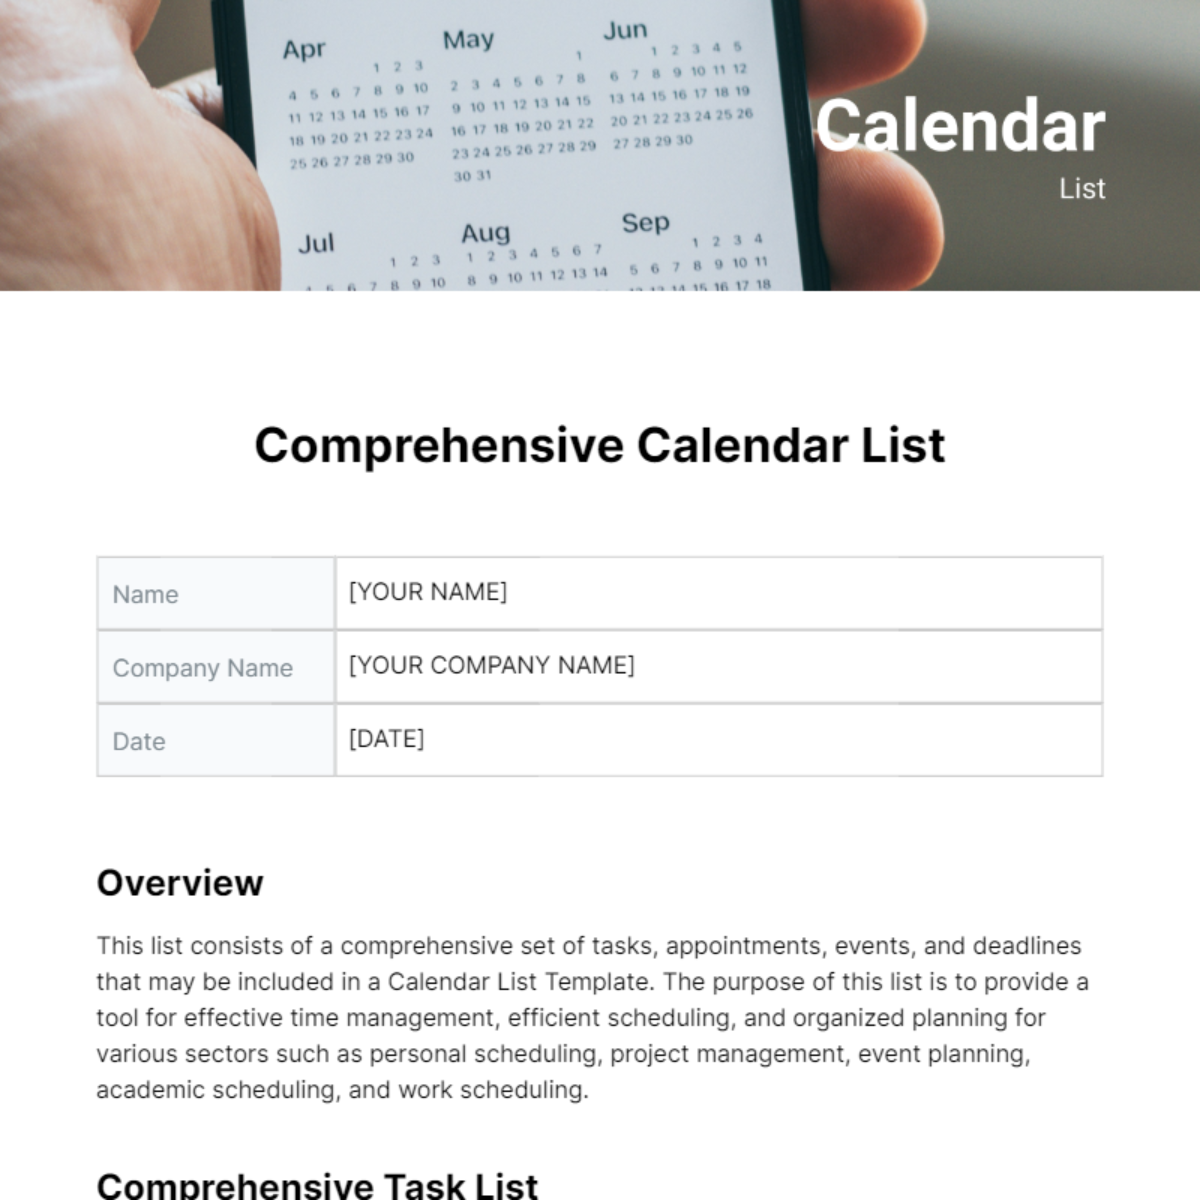 Calendar List Template